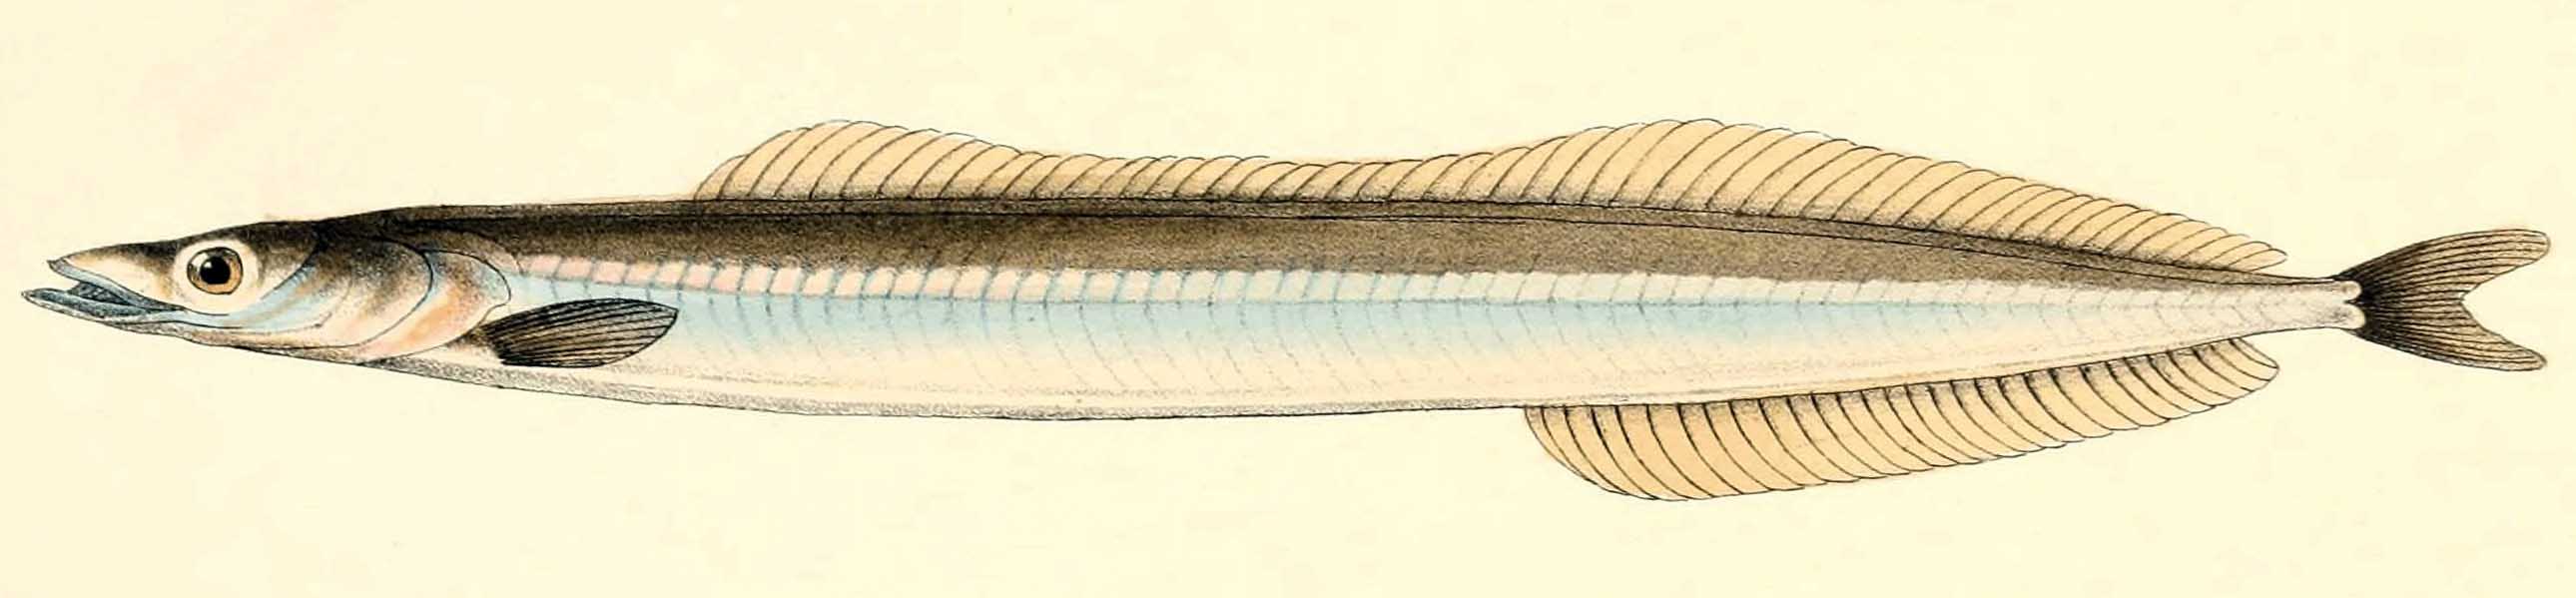 Песчанковые рыбы Чёрного моря (семейство Ammodytidae).